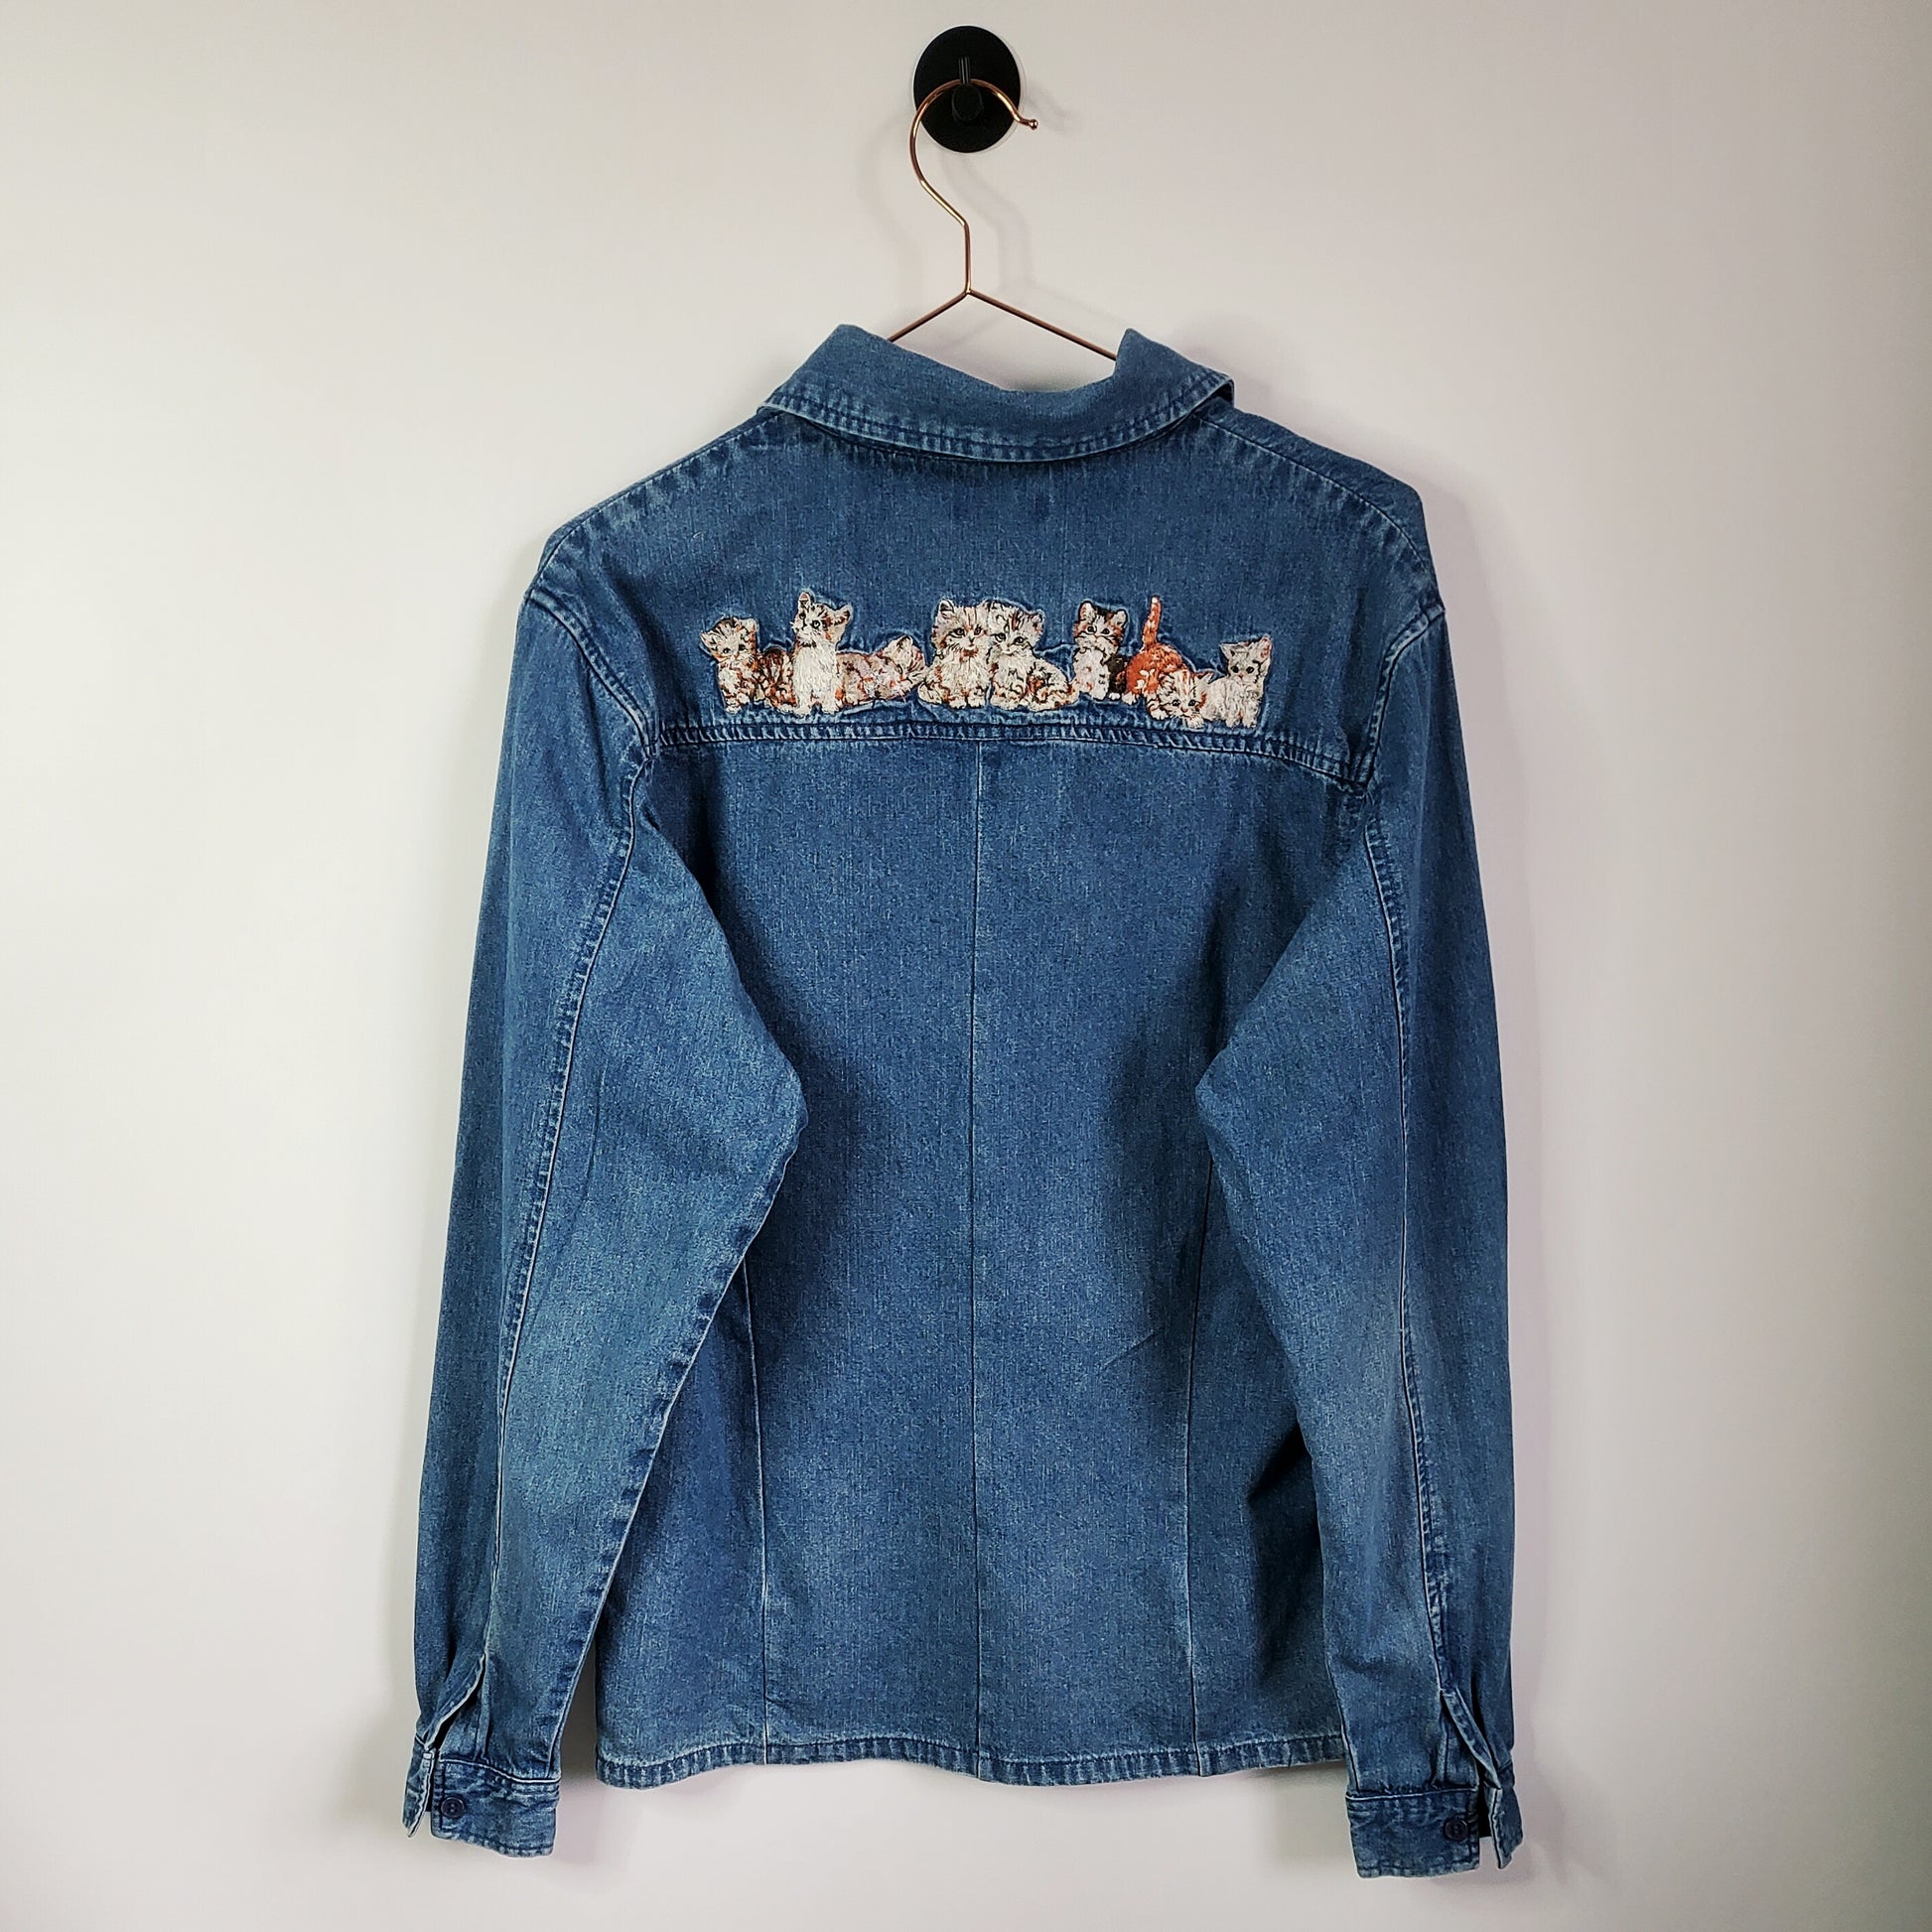 90s Vintage Denim Cat Embroidered Shirt Blue Size 12-14